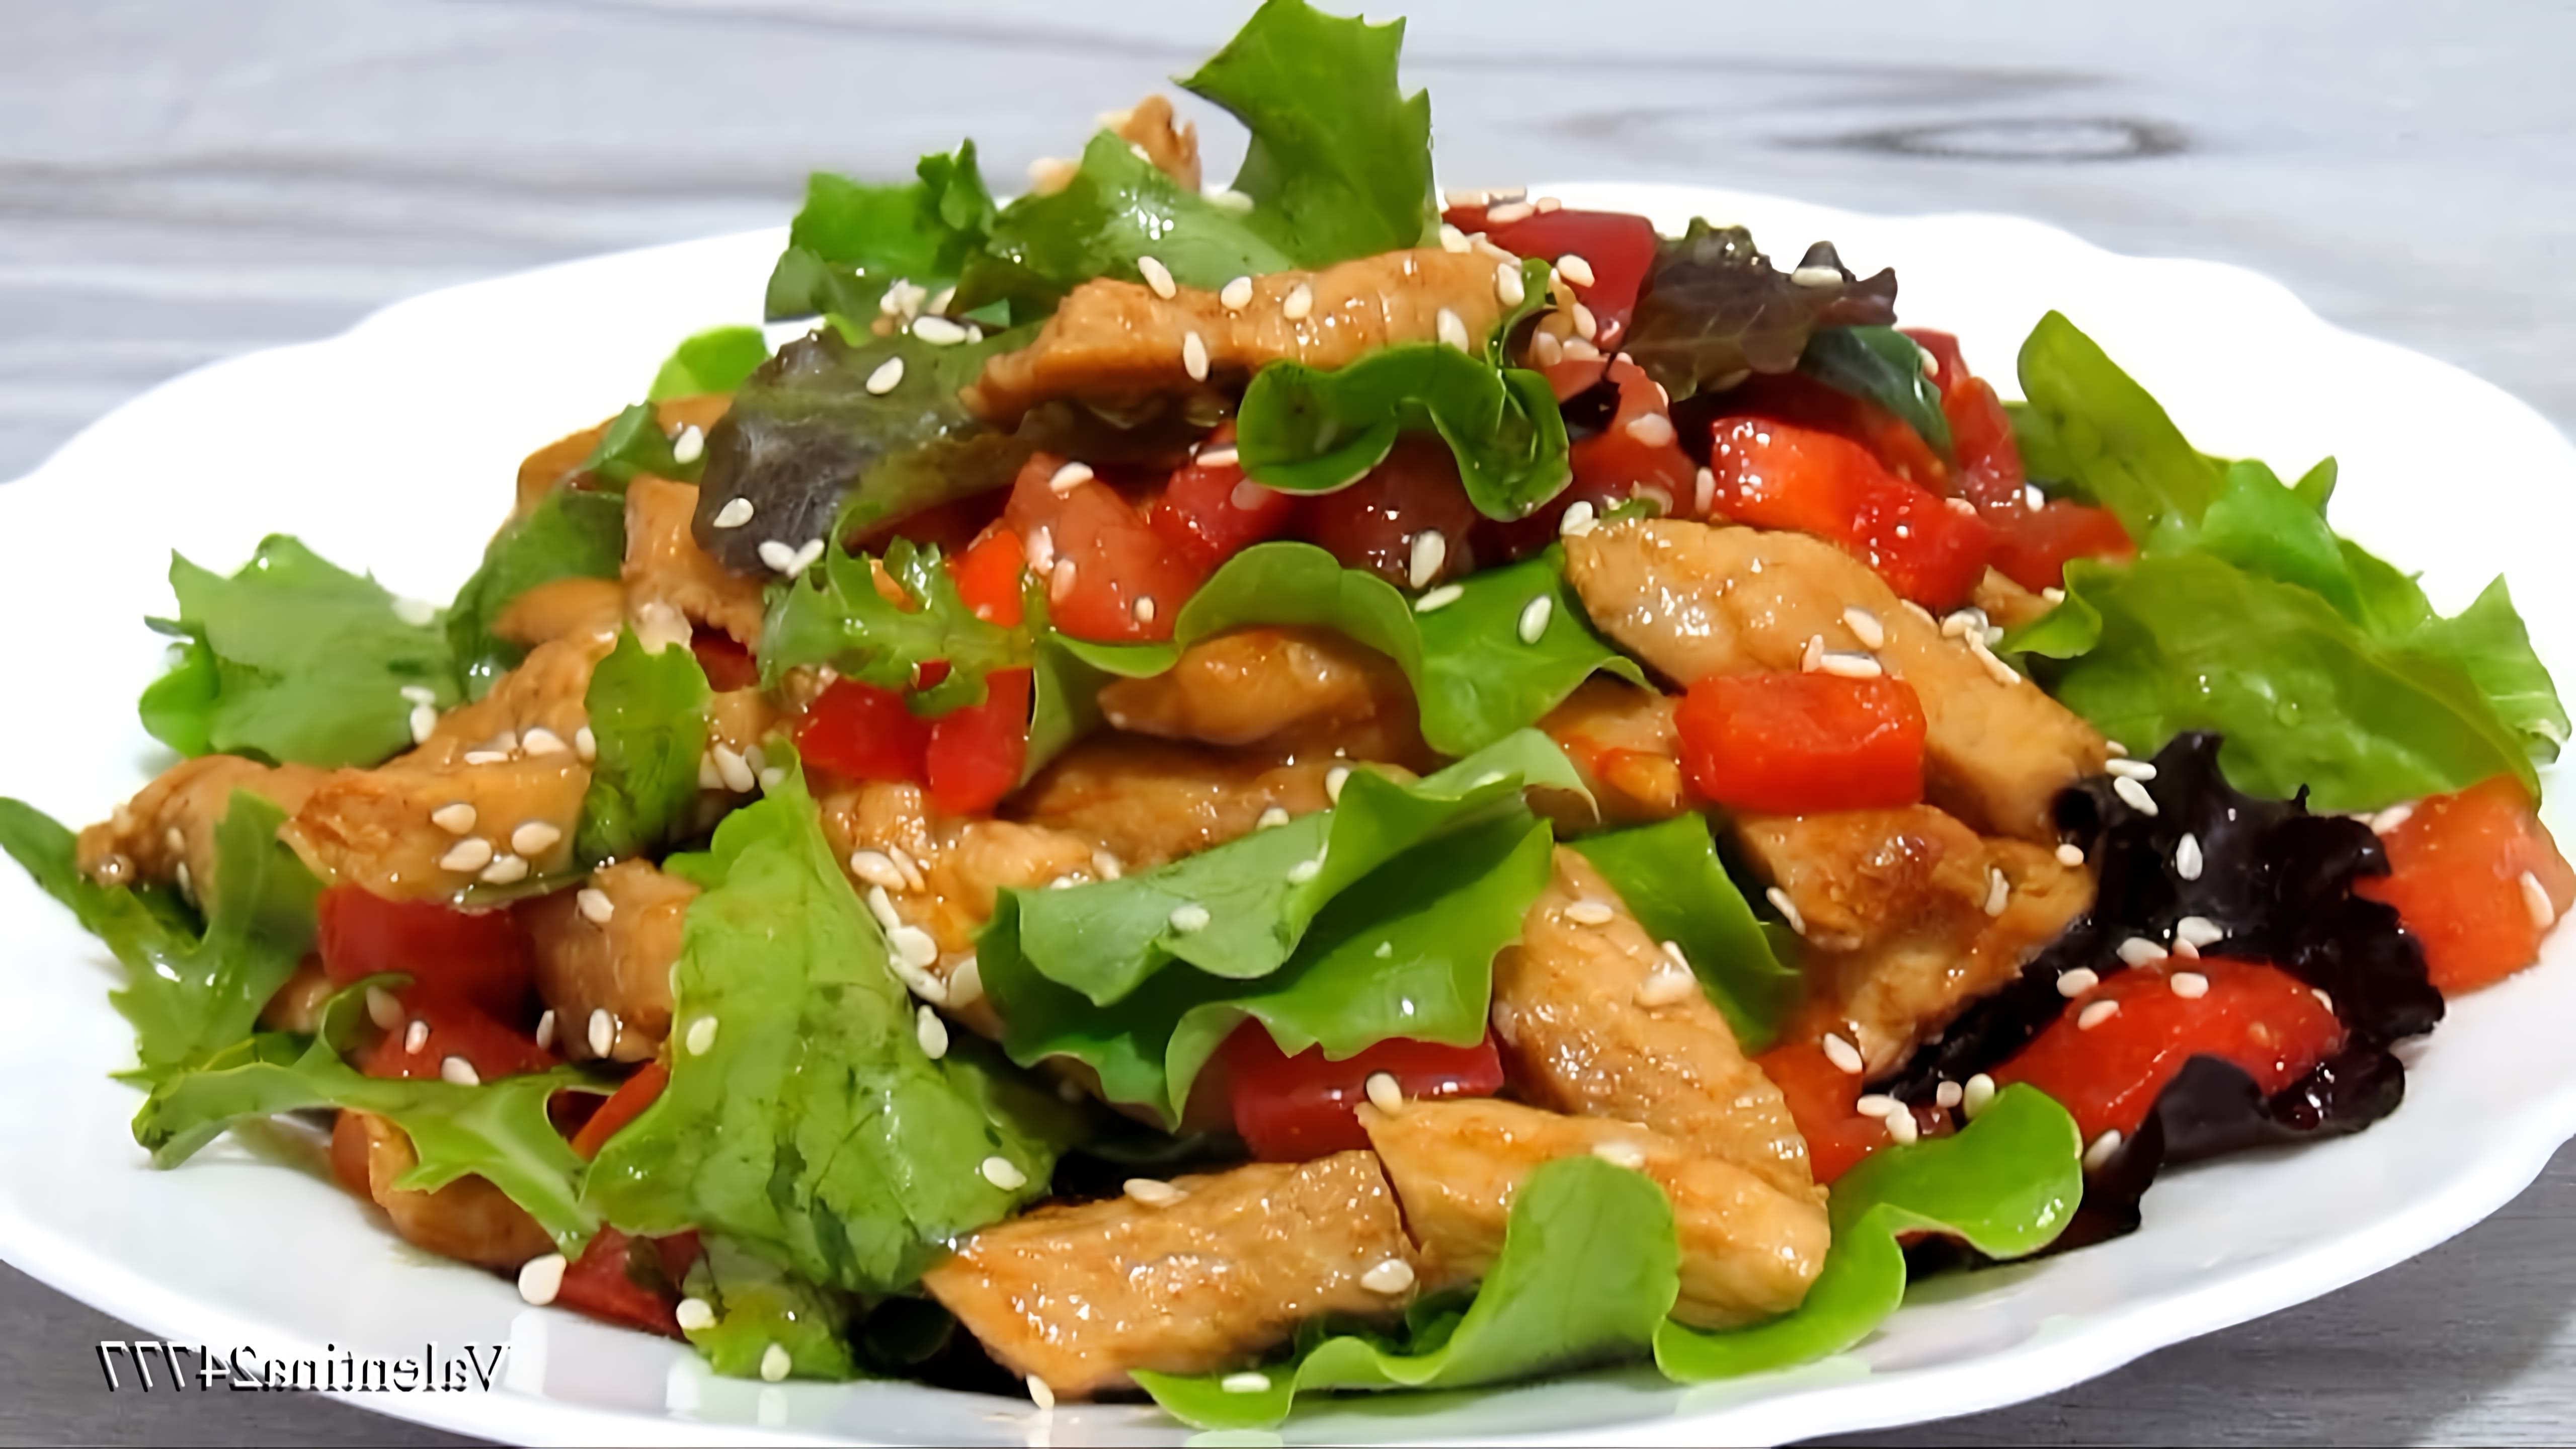 В этом видео демонстрируется рецепт летнего салата с курицей и овощами